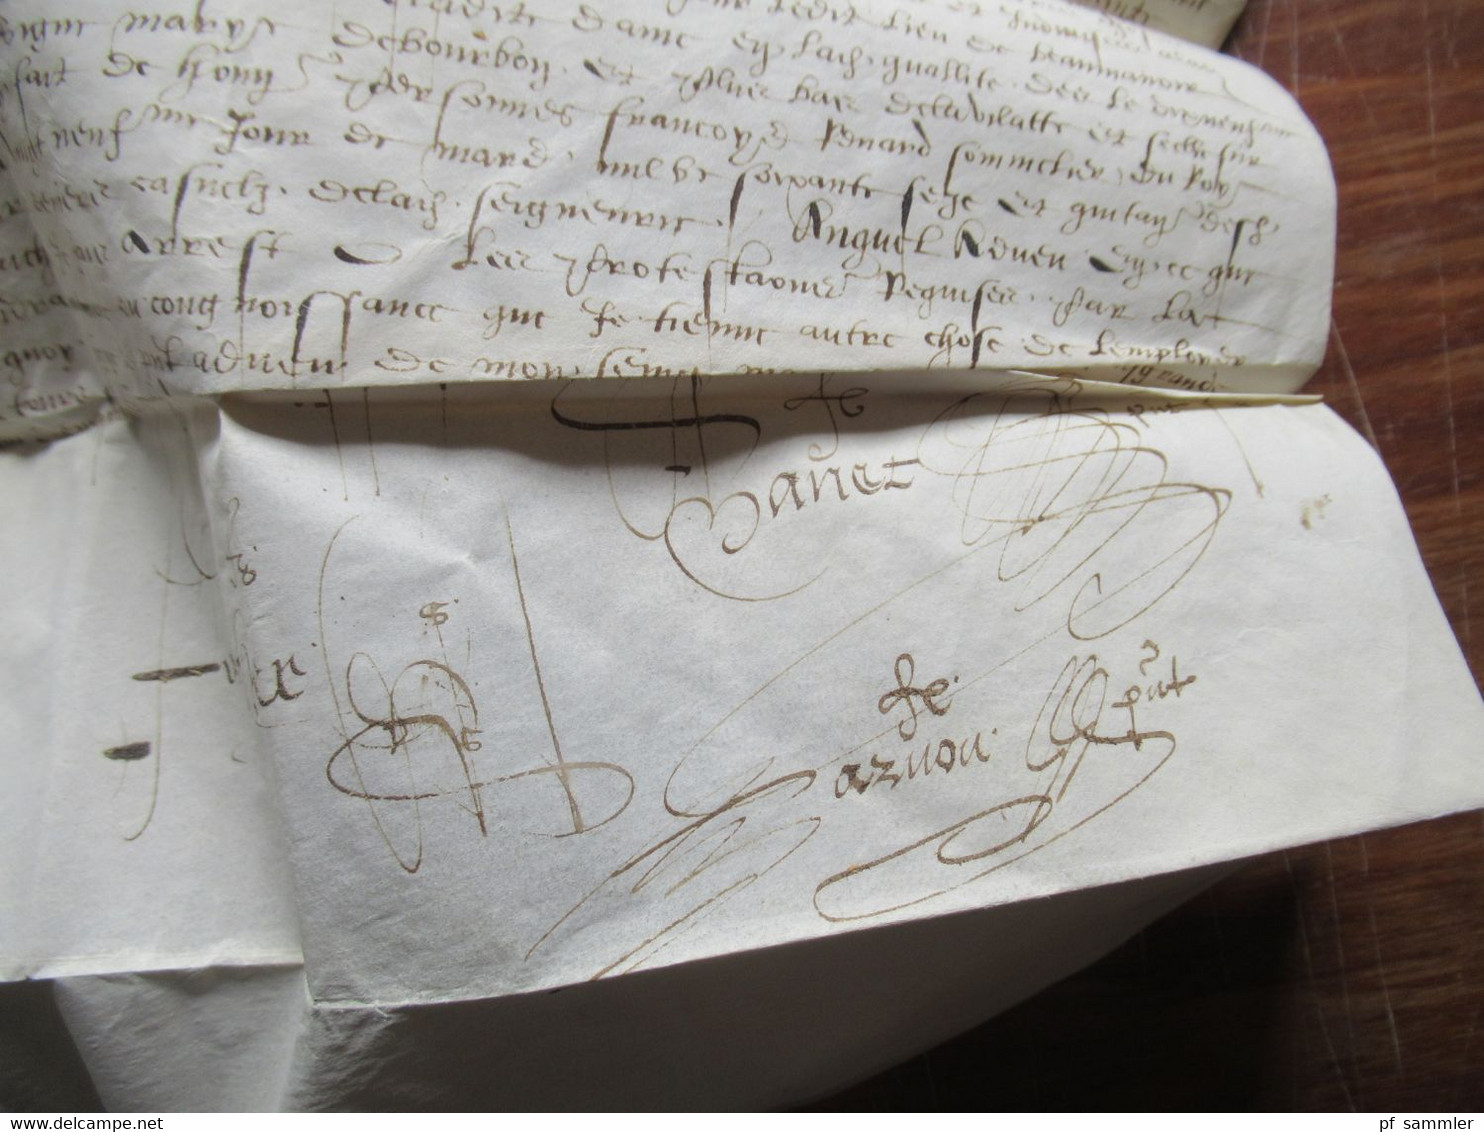 Frankreich Brief / Dokument aus dem Jahr 1579 / 16. Jahrhundert Faltbrief mit Inhalt und einigen Unterschriften! RRR